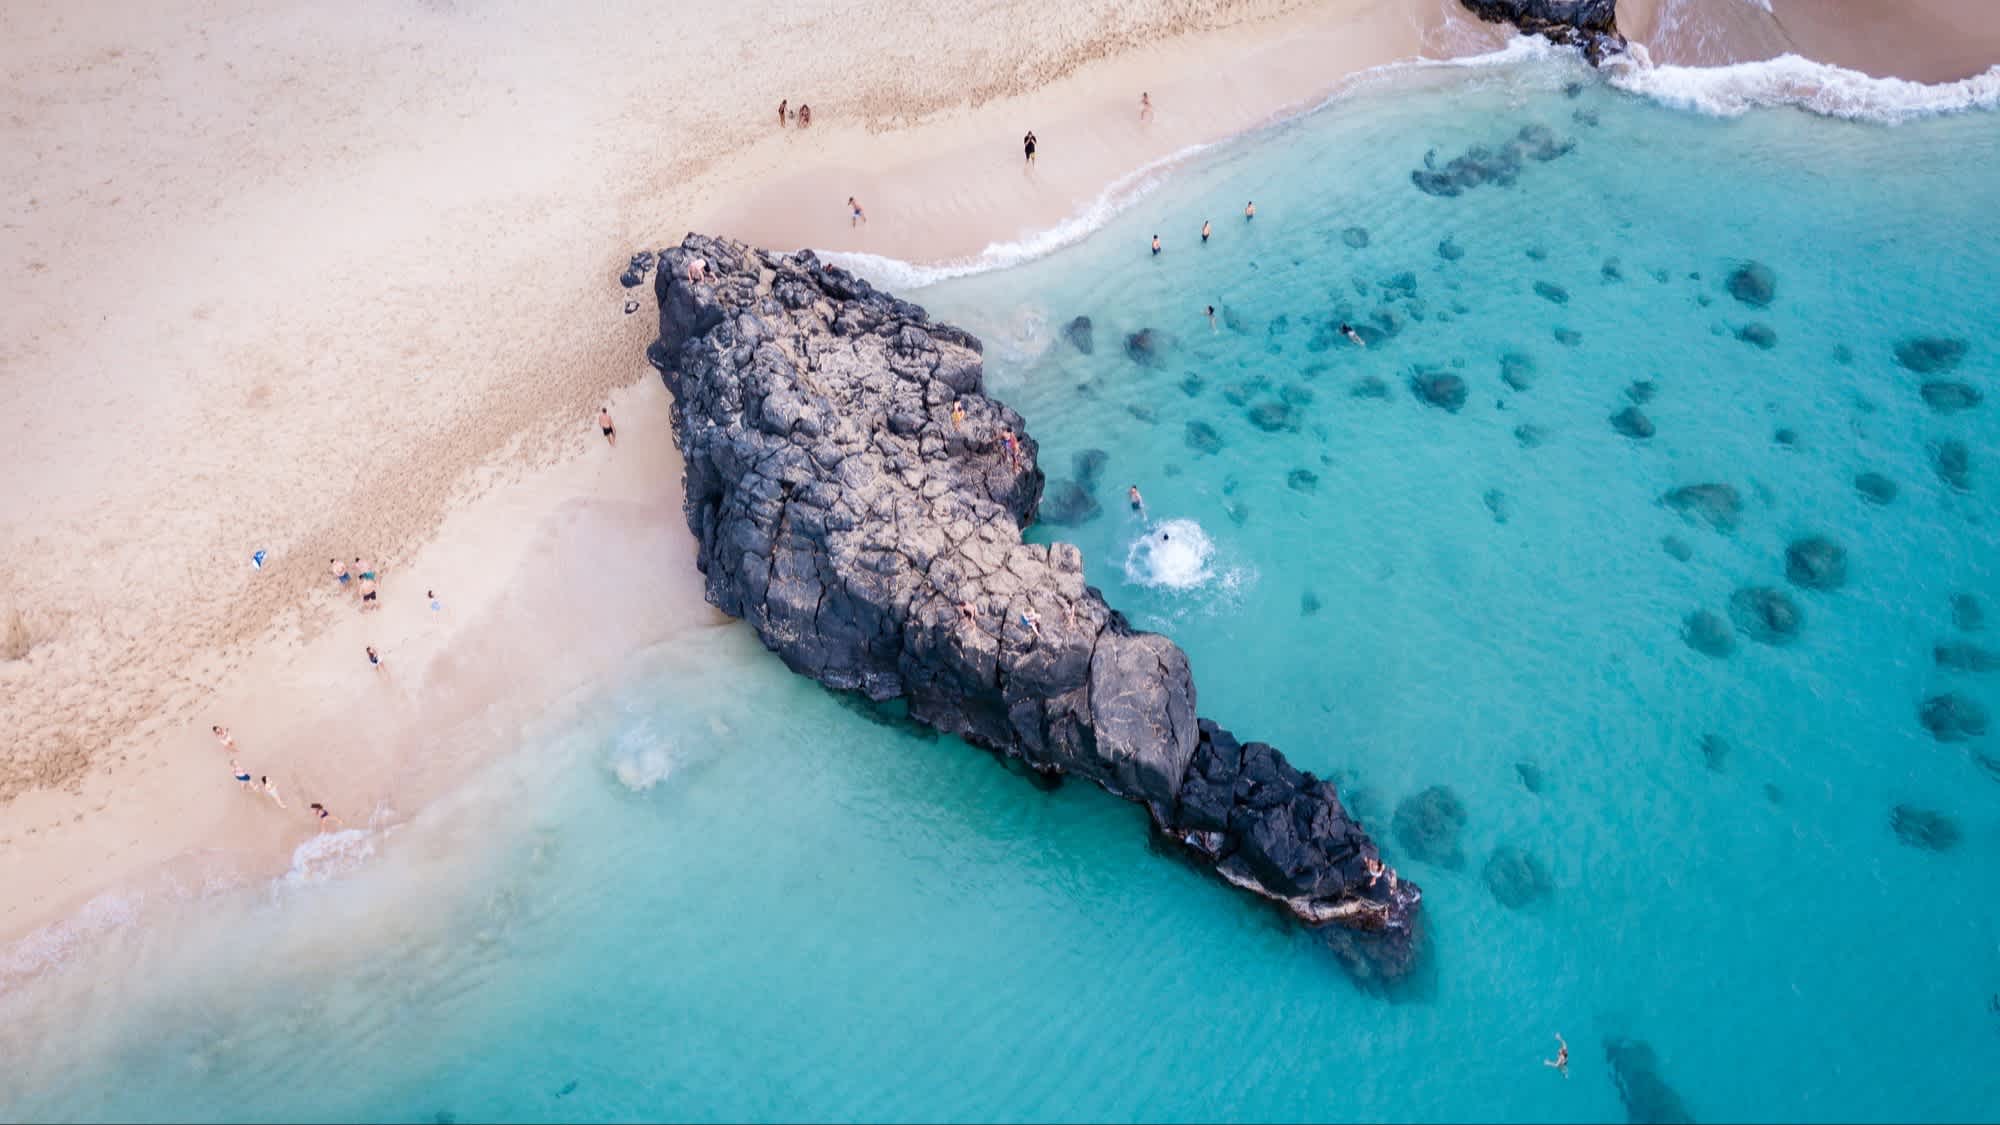 Der Strand Waimea Bay, Oahu, Hawaii, USA bei Sonnenschein und mit Blick auf das Meer aus der Luft sowie einer riesigen Felsansammlung.